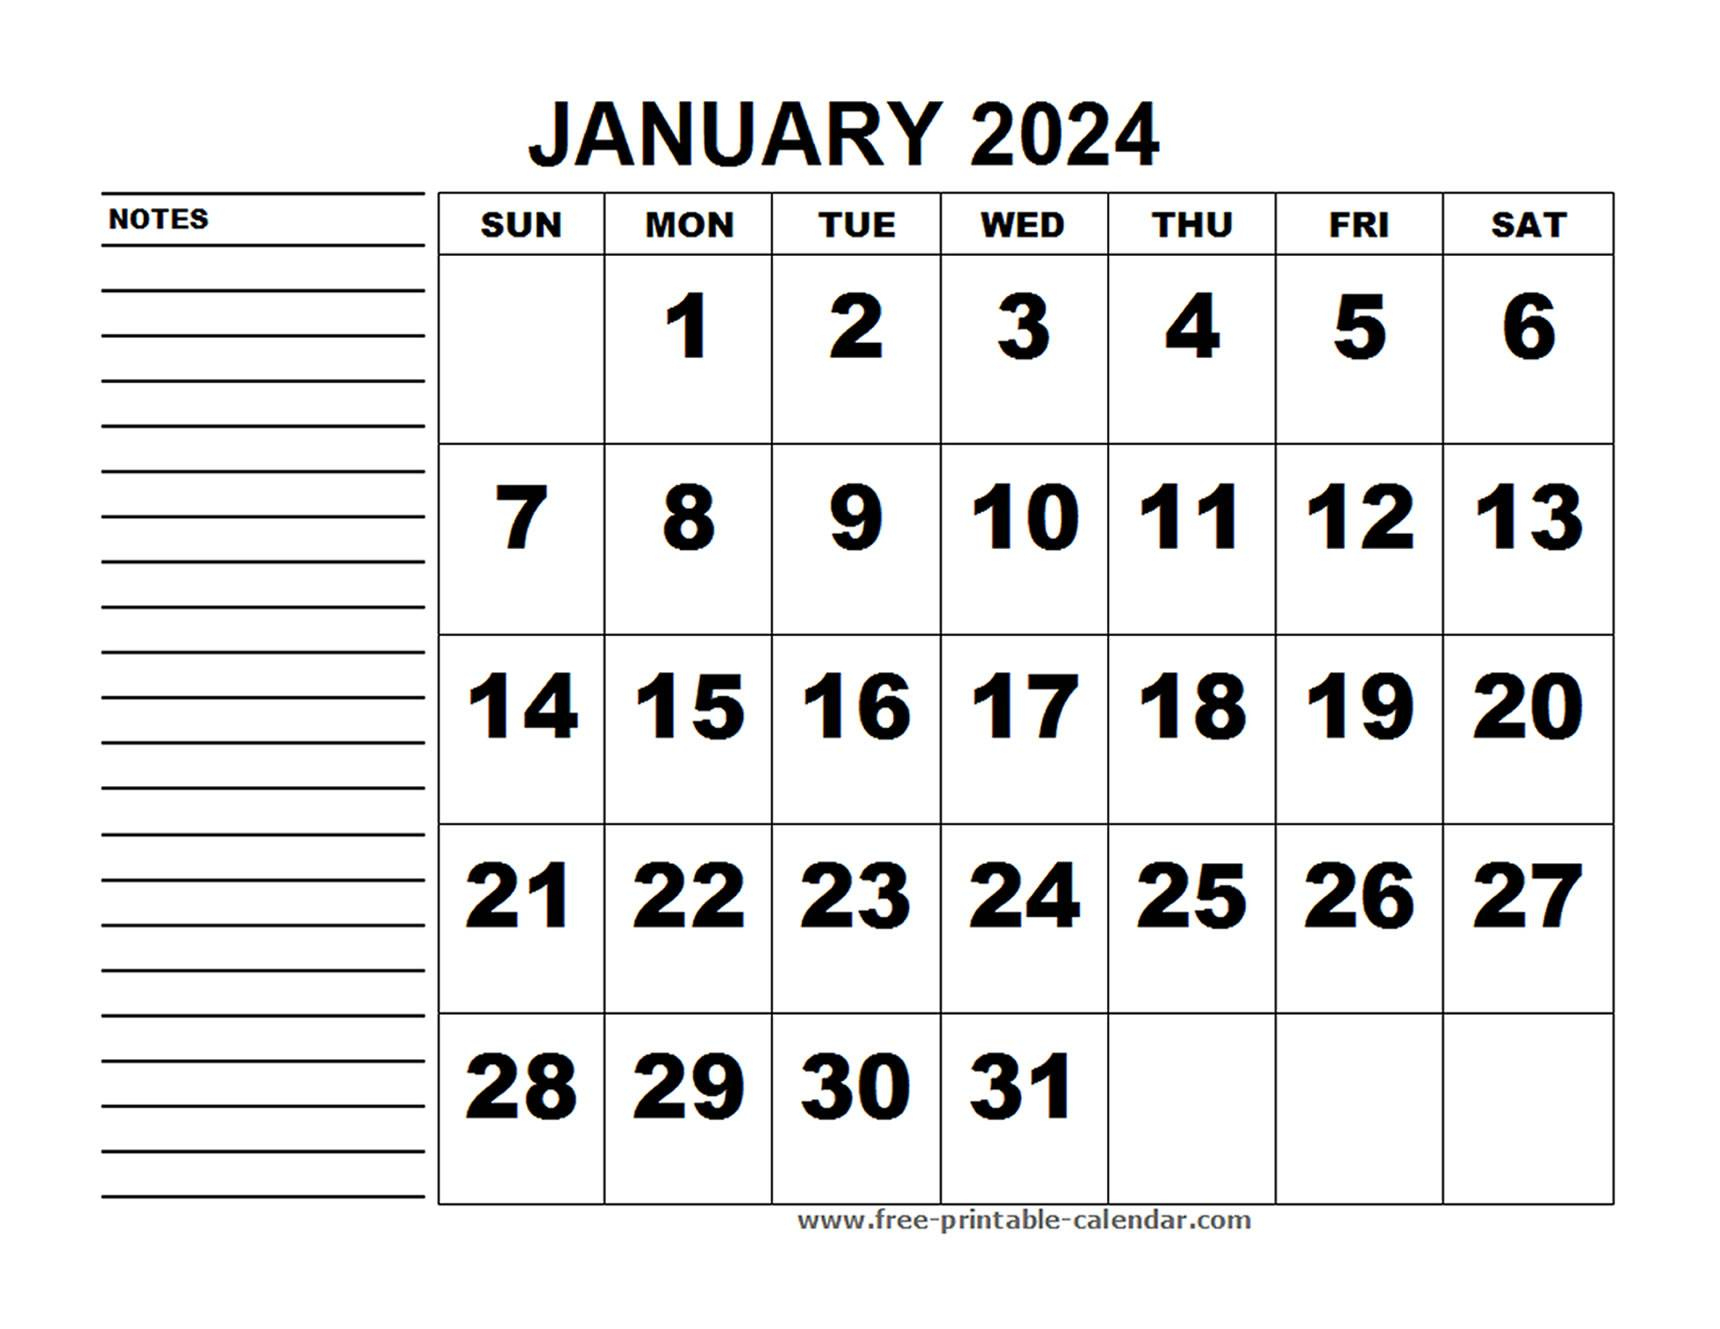 Printable Calendar January 2024 - Free-Printable-Calendar | Printable Calendar January 2024 Australia